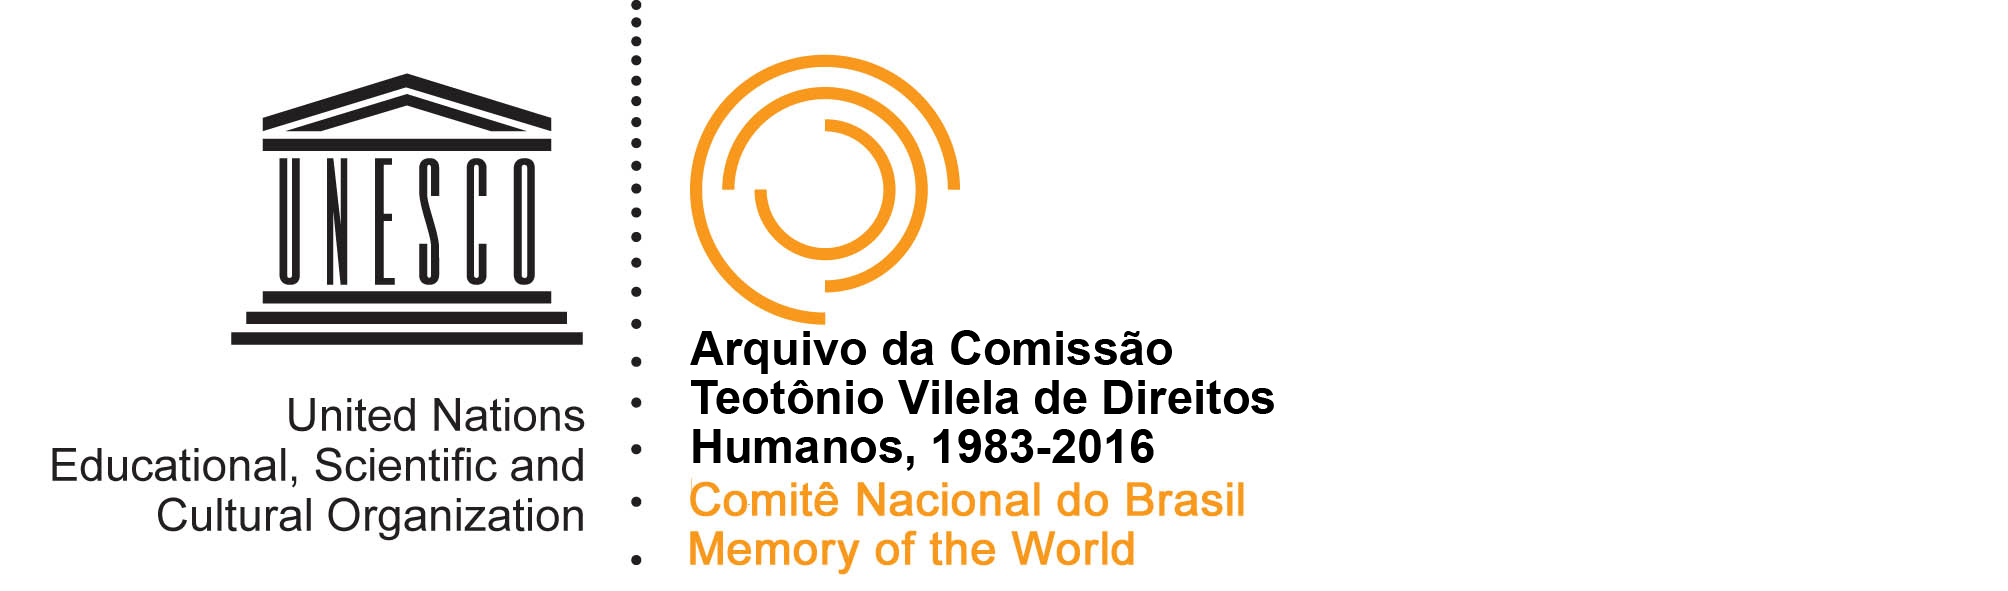 Logotipo UNESCO United Nations Educational, Scientific and Cultural Organization - Arquivo da Comissão Teotônio Vilela de Direitos Humanos - 1983-2016 - Comitê Nacional do Brasil - Memory of the World